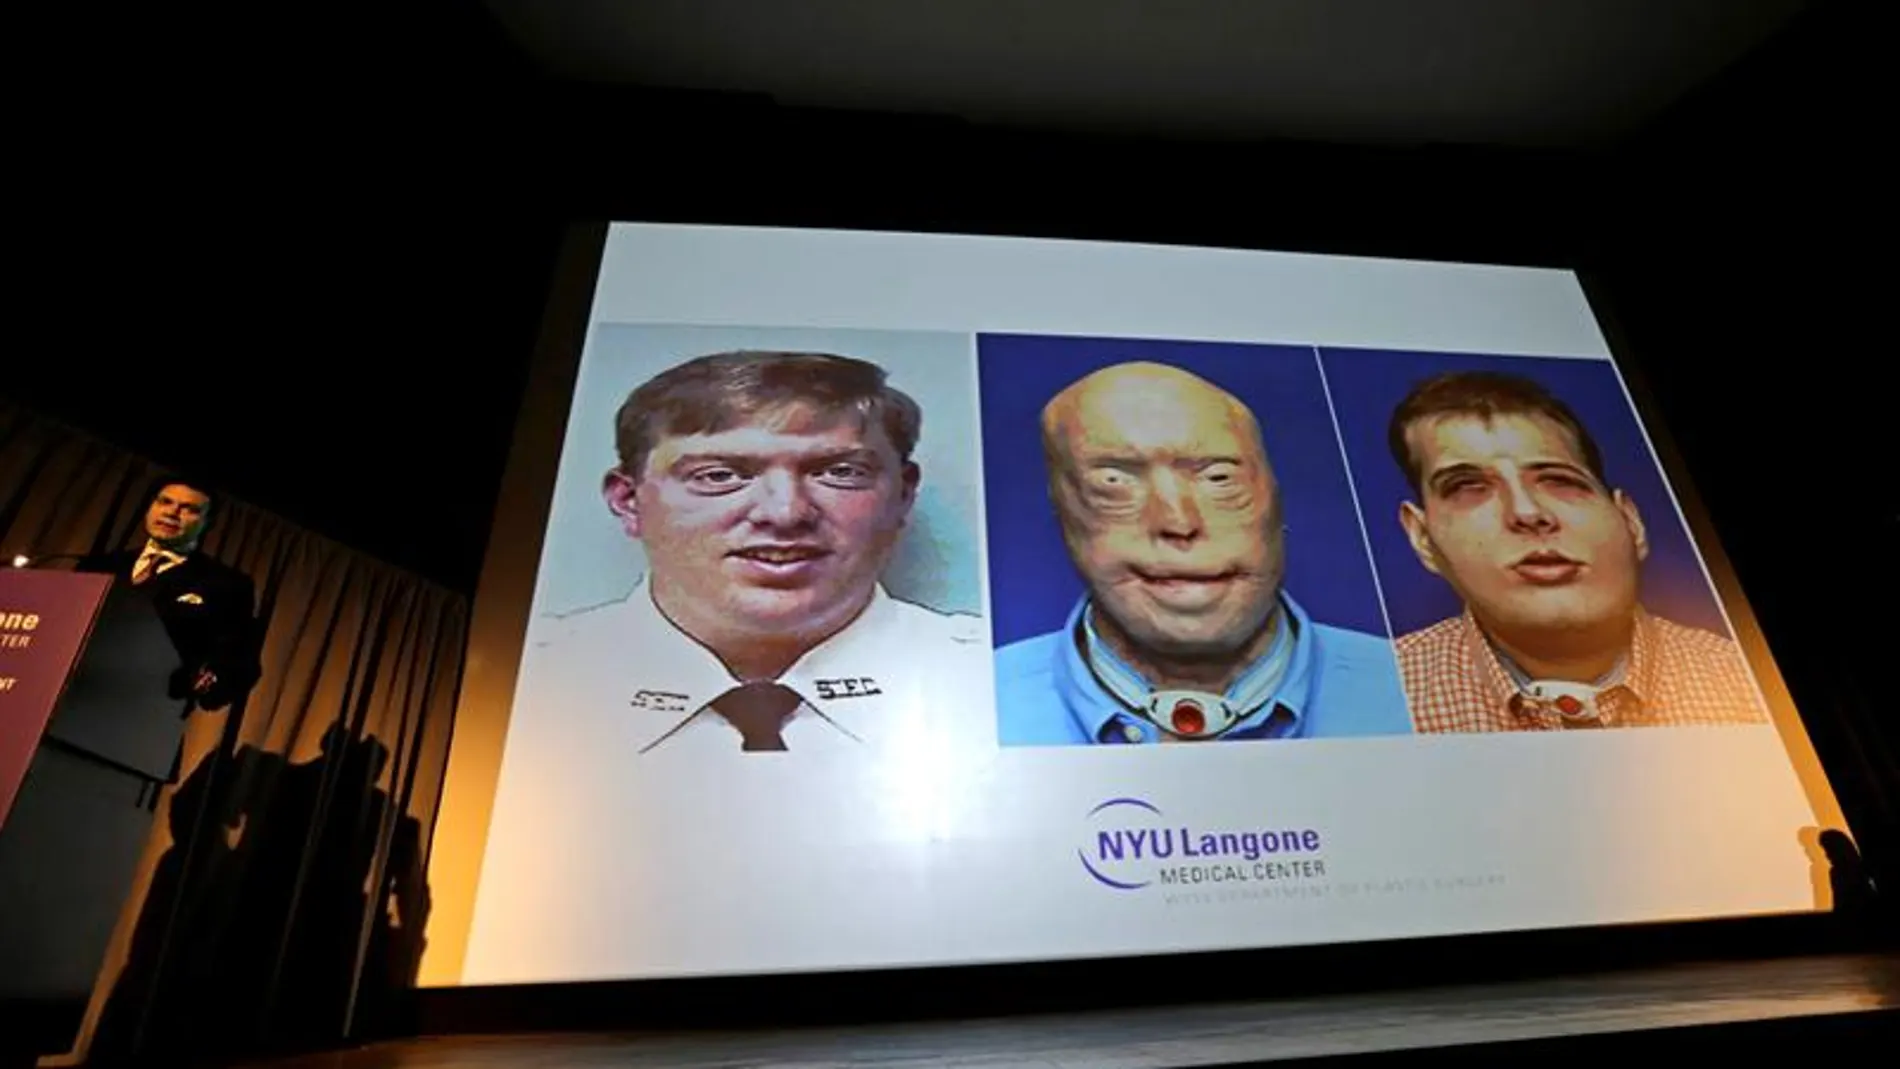 Imagen del trasplante de cara realizado en EEUU